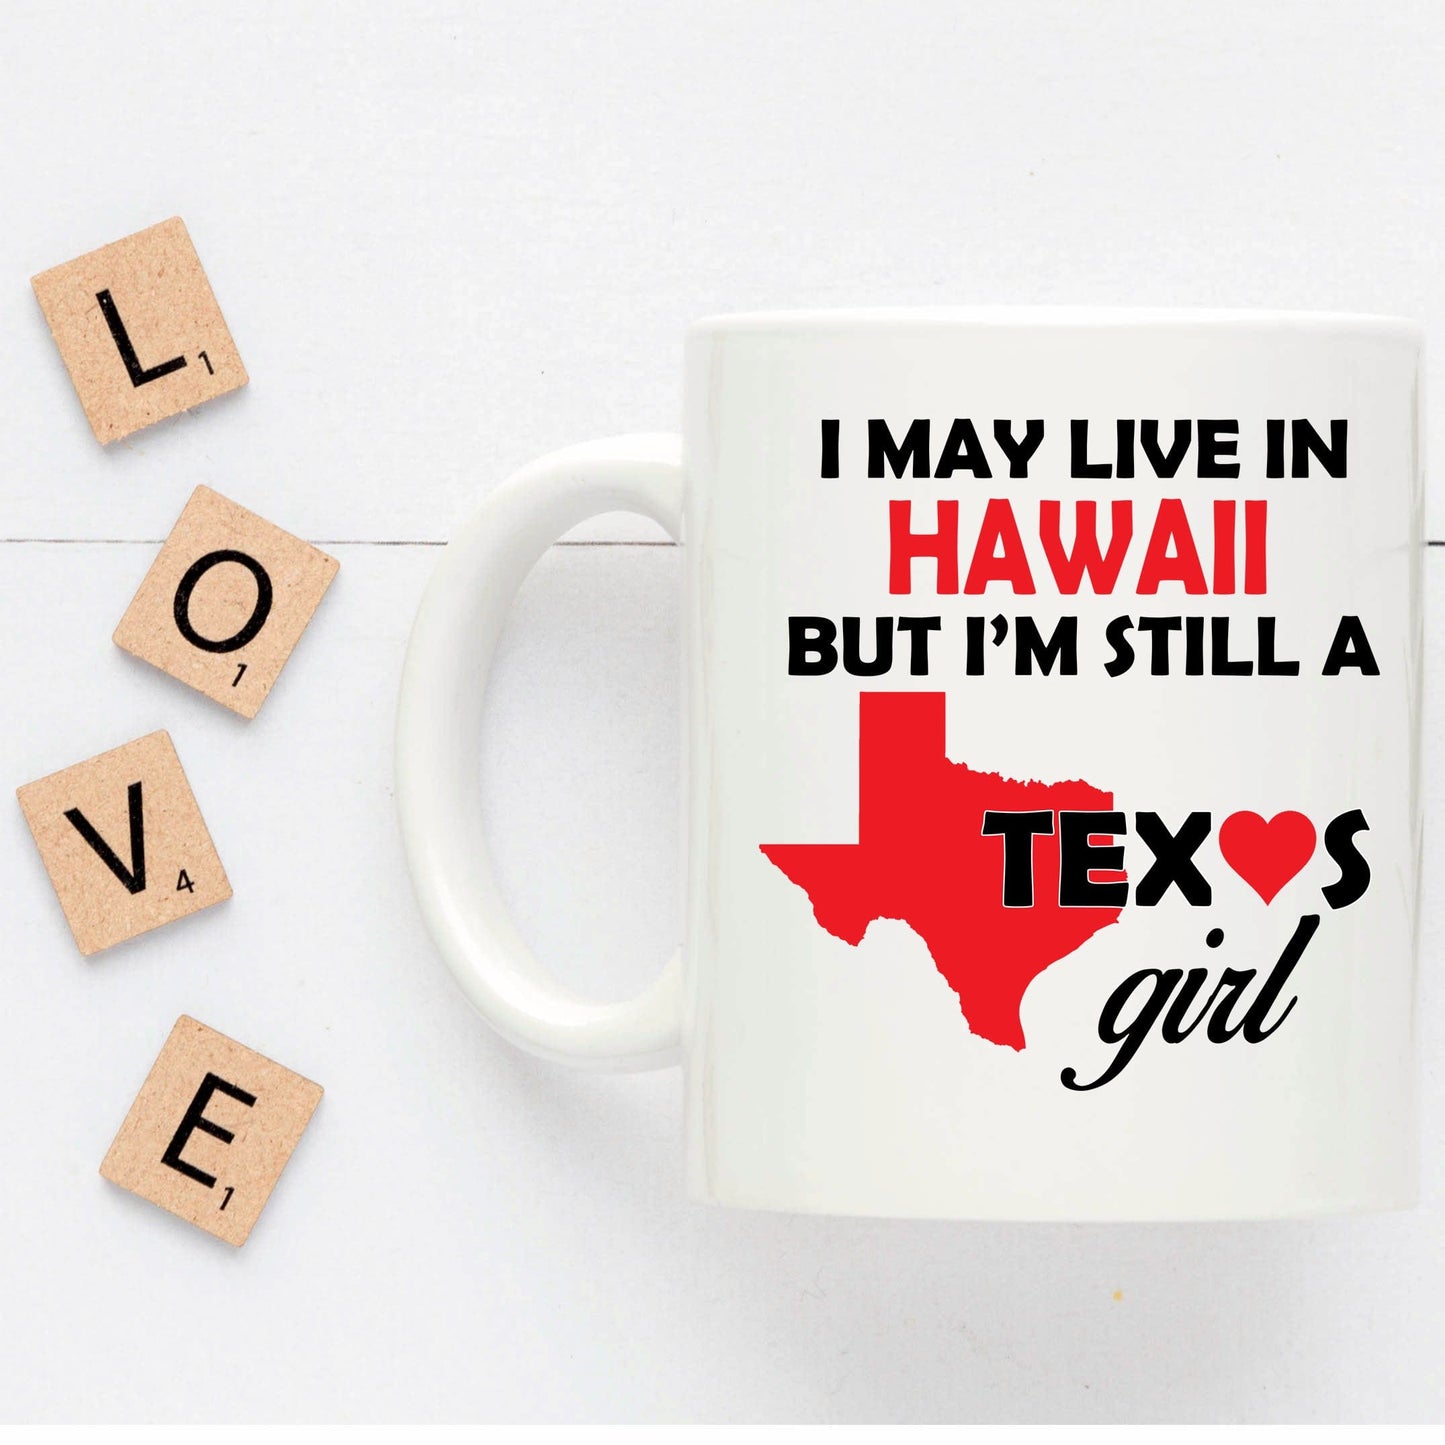 Texas Girl Living in Hawaii Funny Coffee Mug